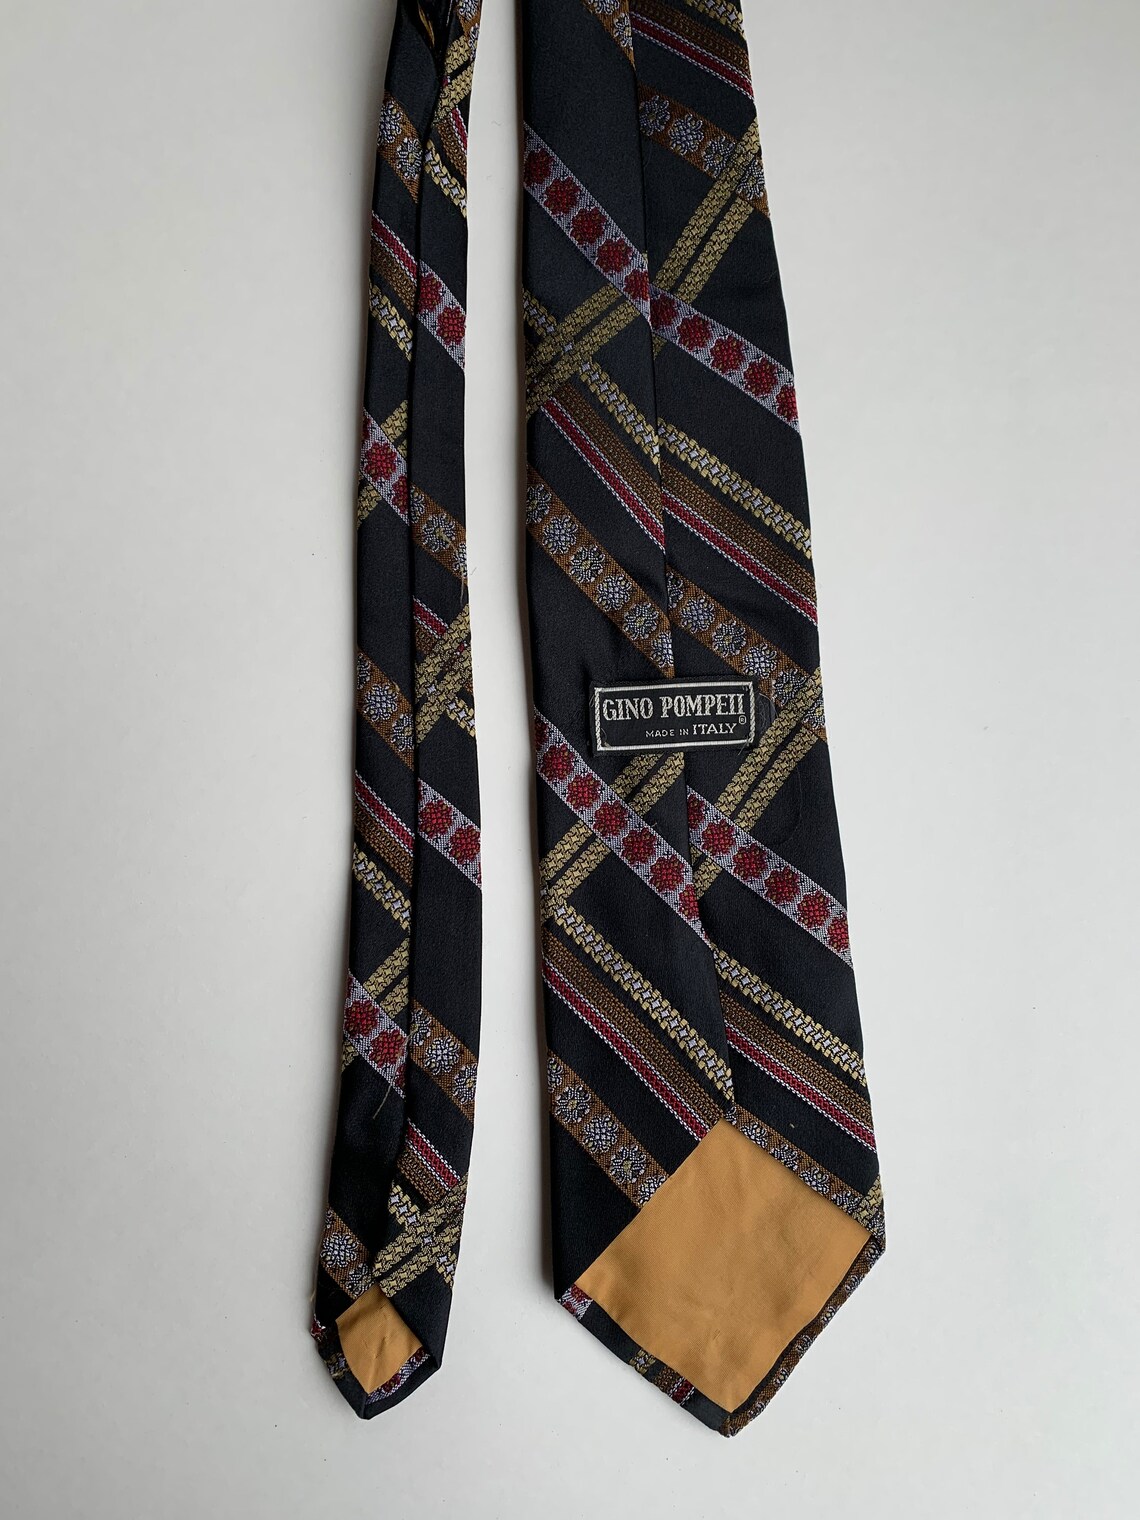 Gorgeous Vintage Italian Silk Tie c1980s Gino Pompeii Made | Etsy